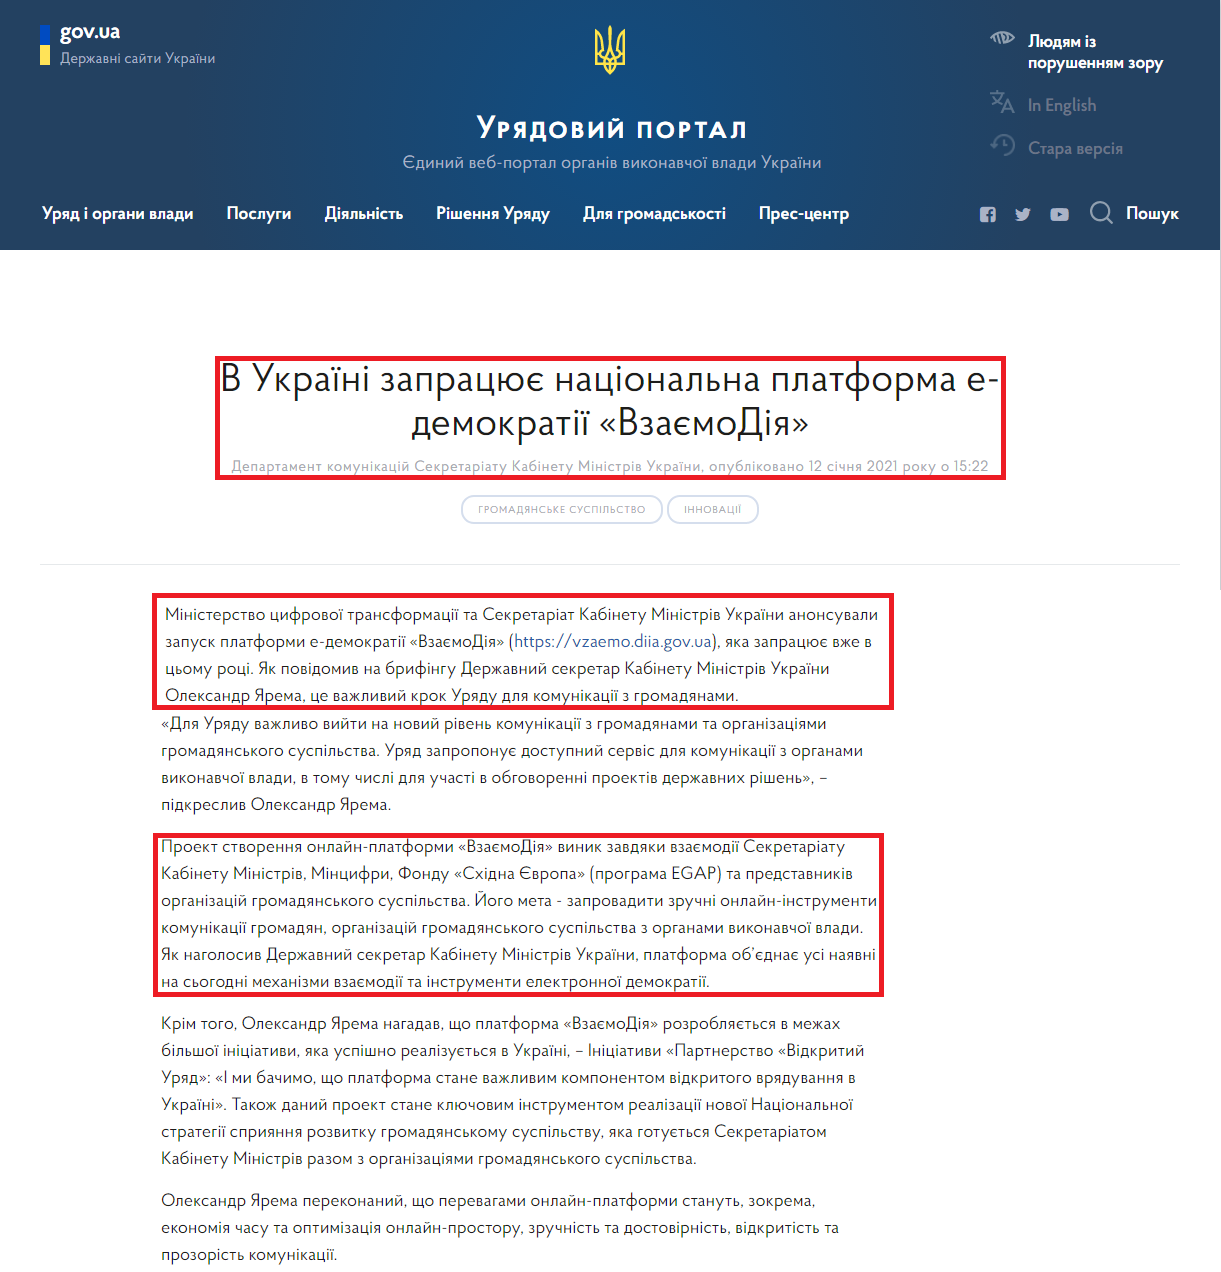 https://www.kmu.gov.ua/news/v-ukrayini-zapracyuye-nacionalna-platforma-e-demokratiyi-vzayemodiya